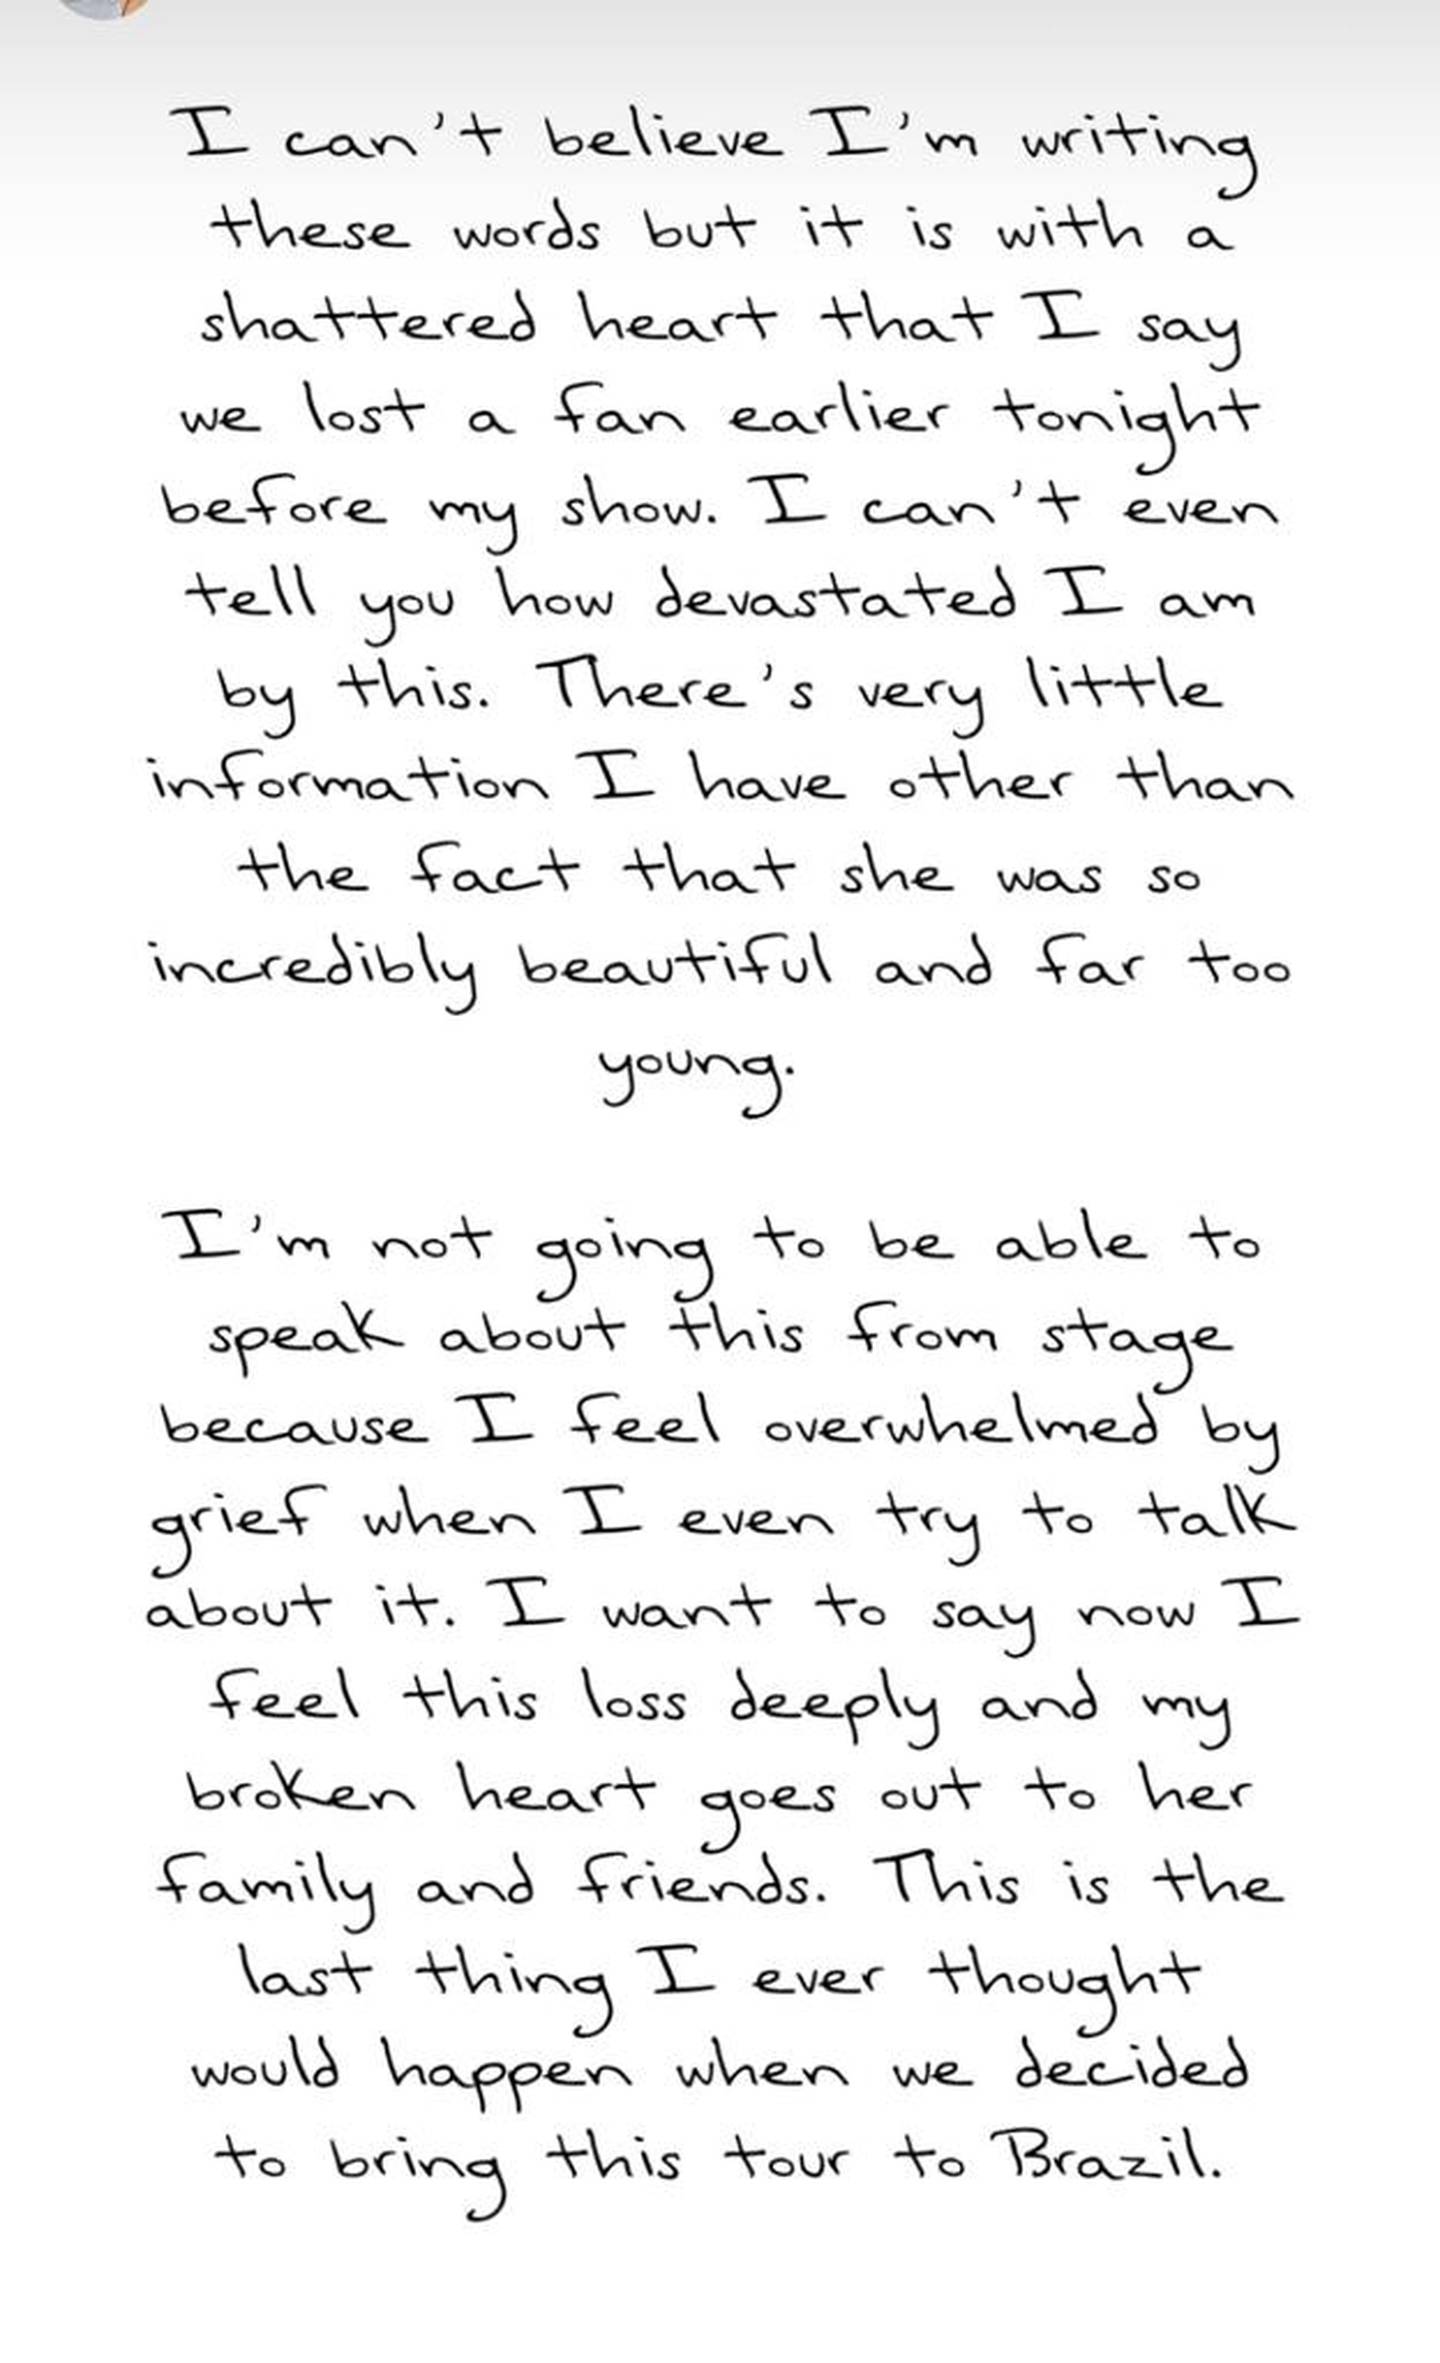 Taylor Swift escribió un mensaje para sus fanáticos en sus historias de Instagram, después de su primer concierto en Brasil.